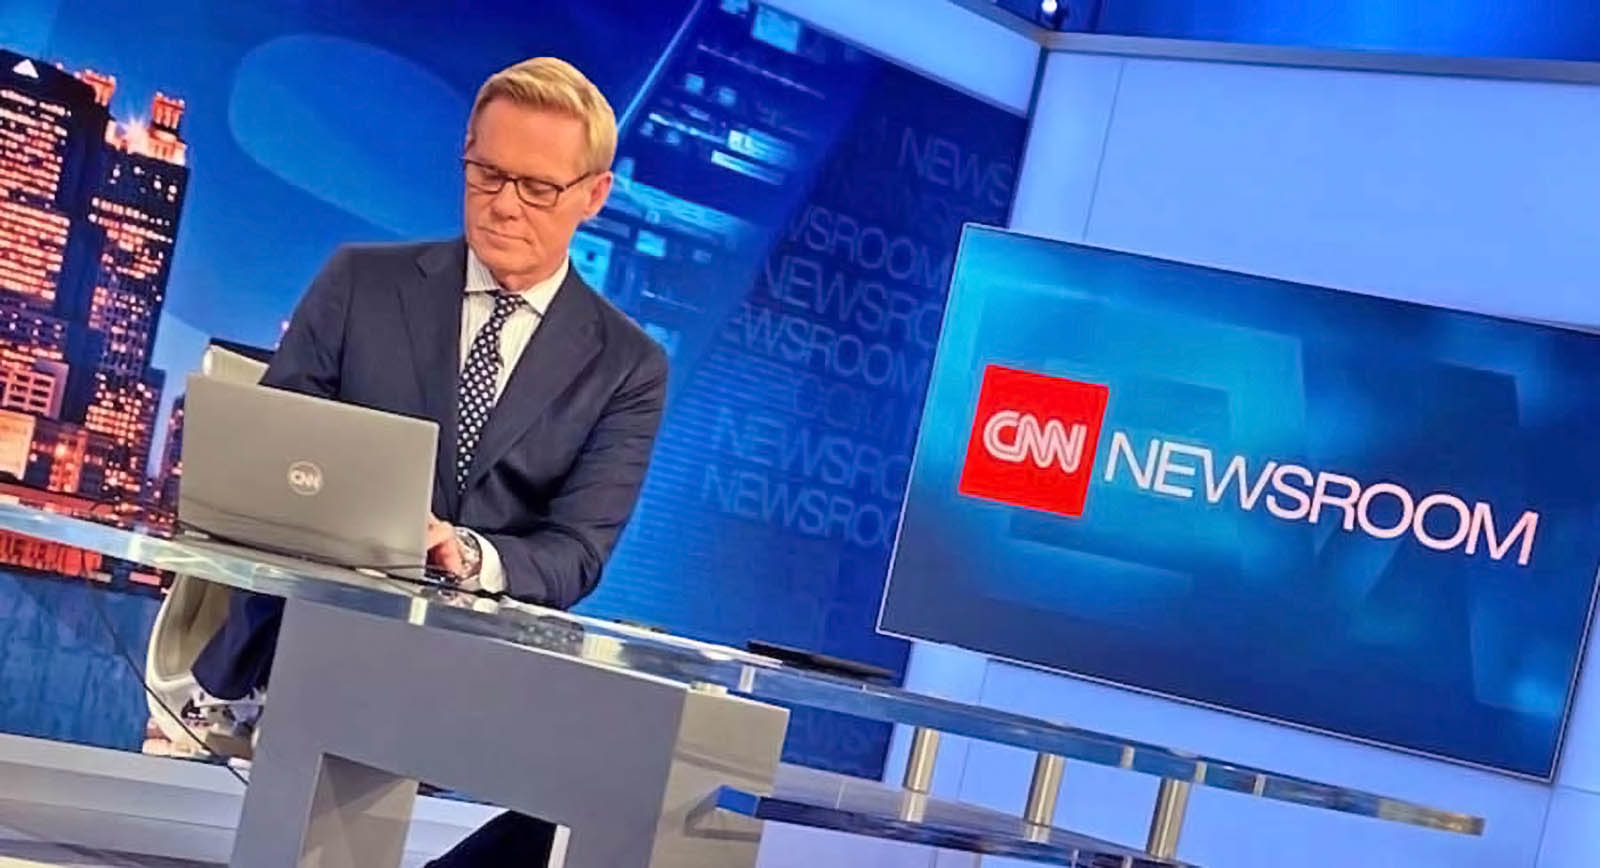 CNN Newsroom set